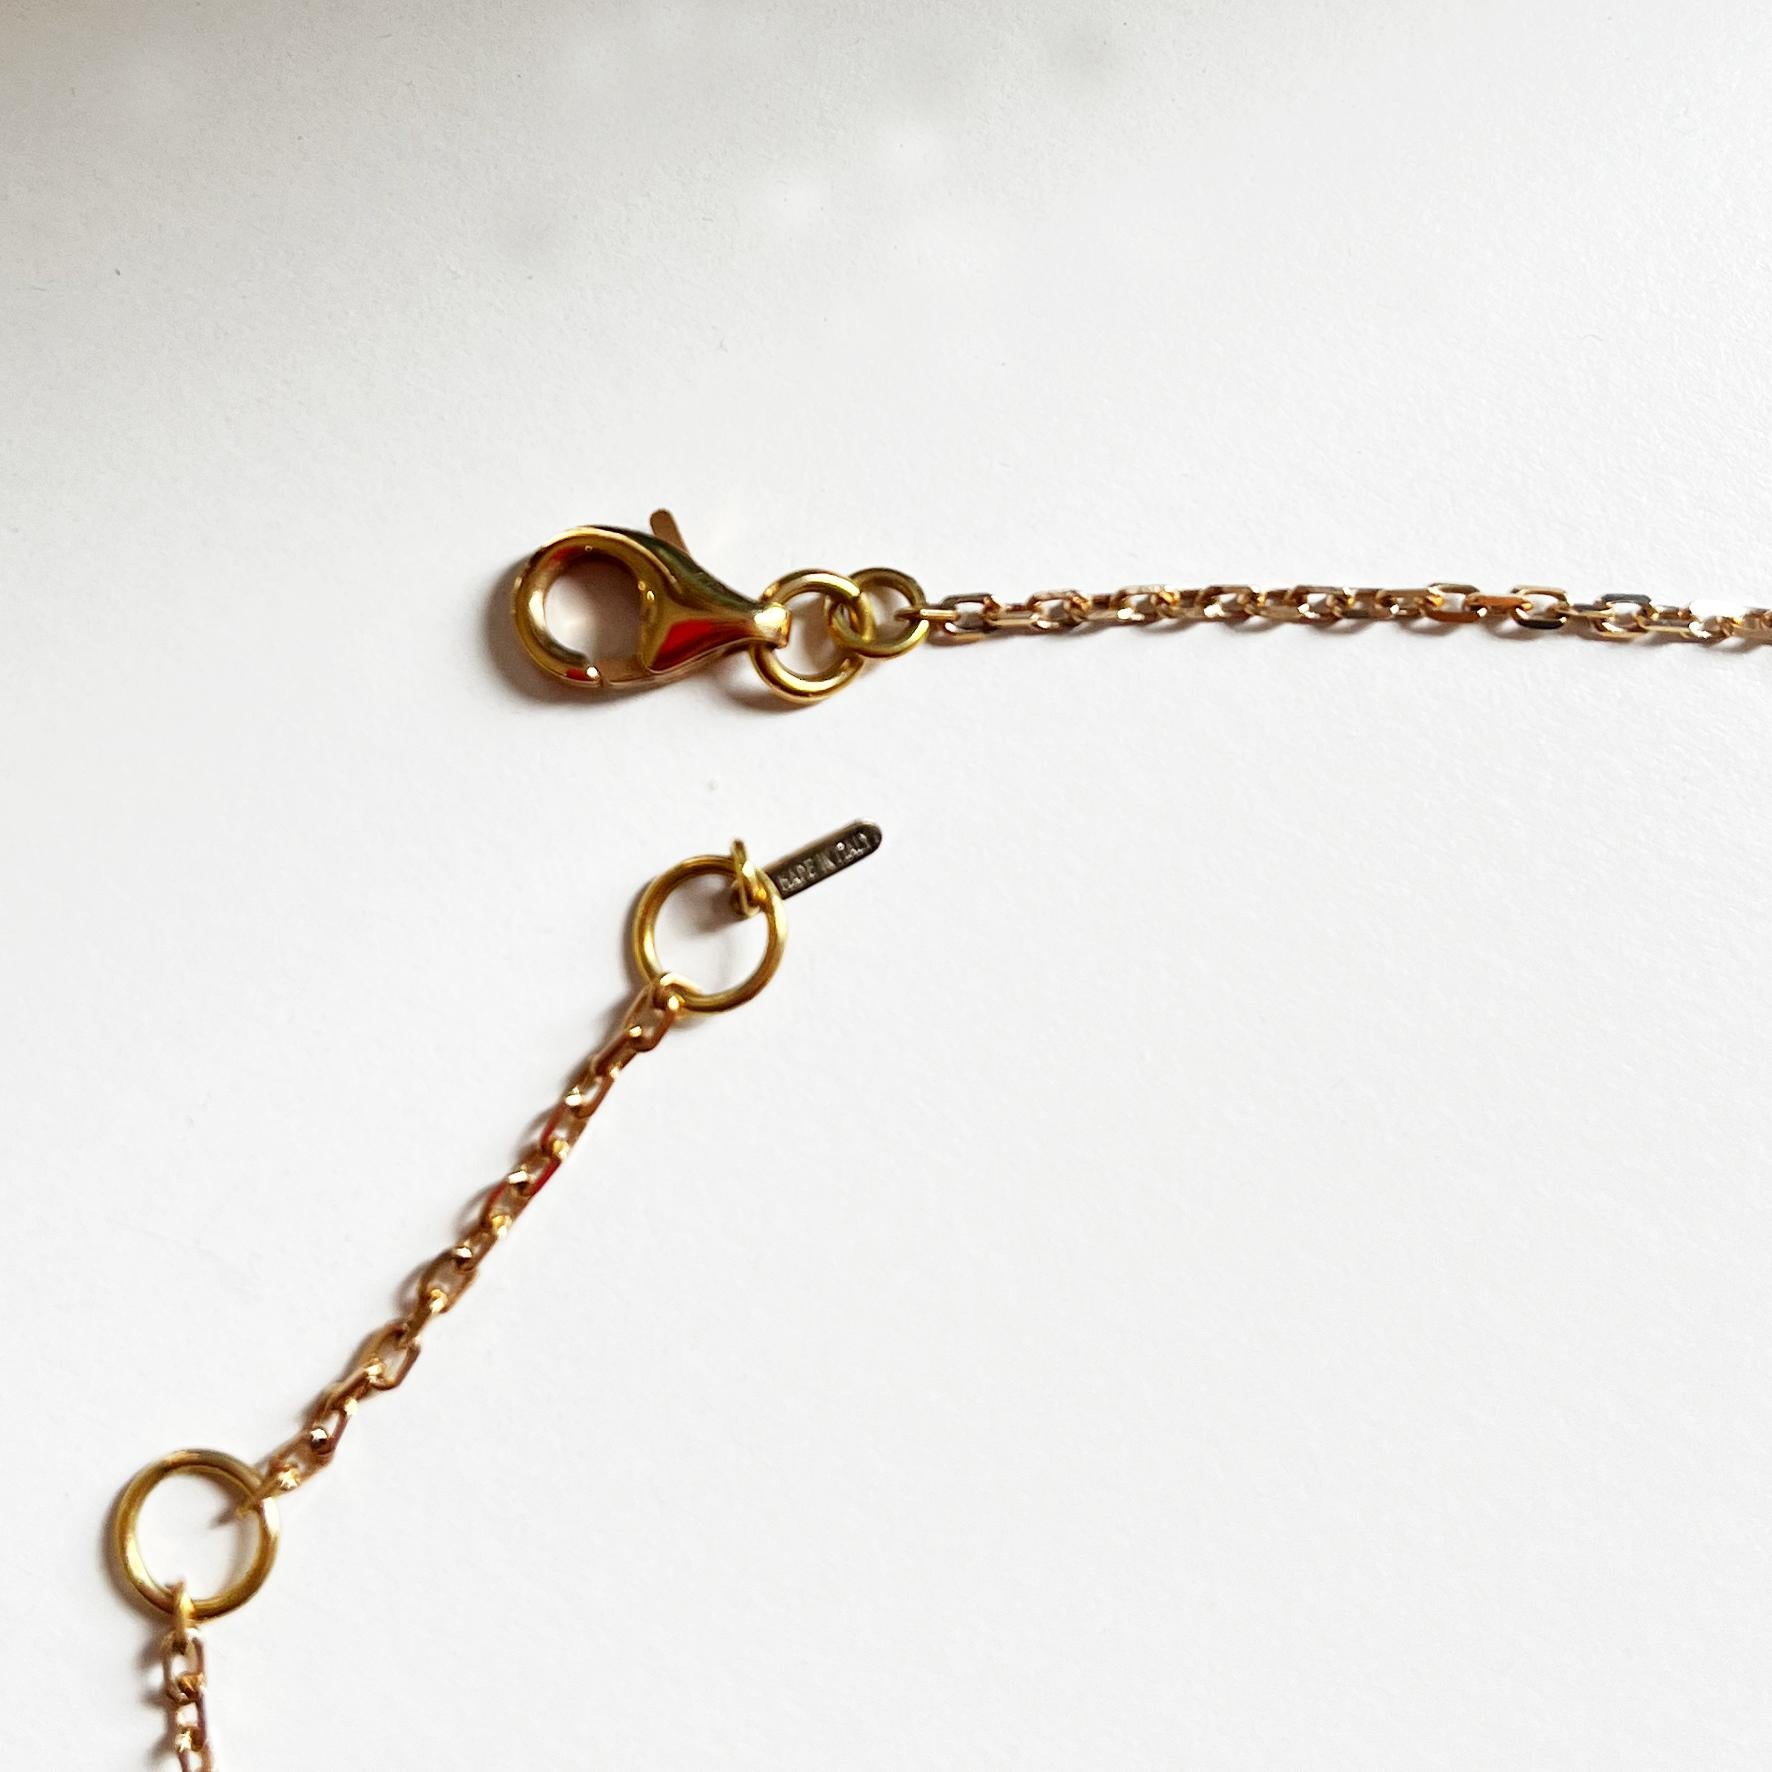 Le collier en or rose 18 carats avec onyx, perles, calcédoine rose et quartz rose est une pièce remarquable qui associe la chaleur de l'or rose à l'audace de l'onyx, à l'élégance classique des perles et aux tons doux et féminins de la calcédoine